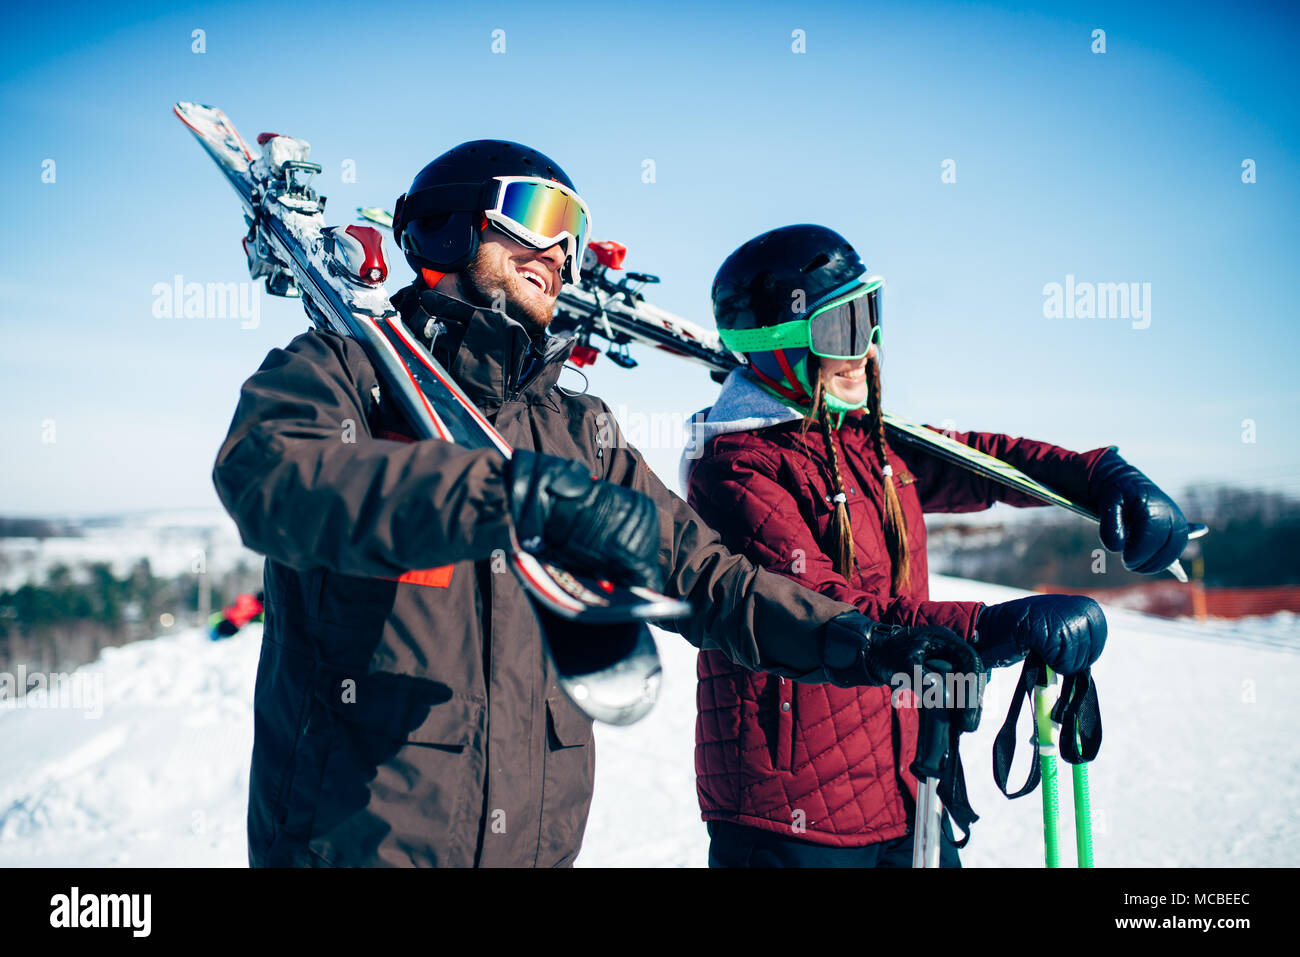 Les skieurs avec skis et bâtons, extreme lifestyle Banque D'Images